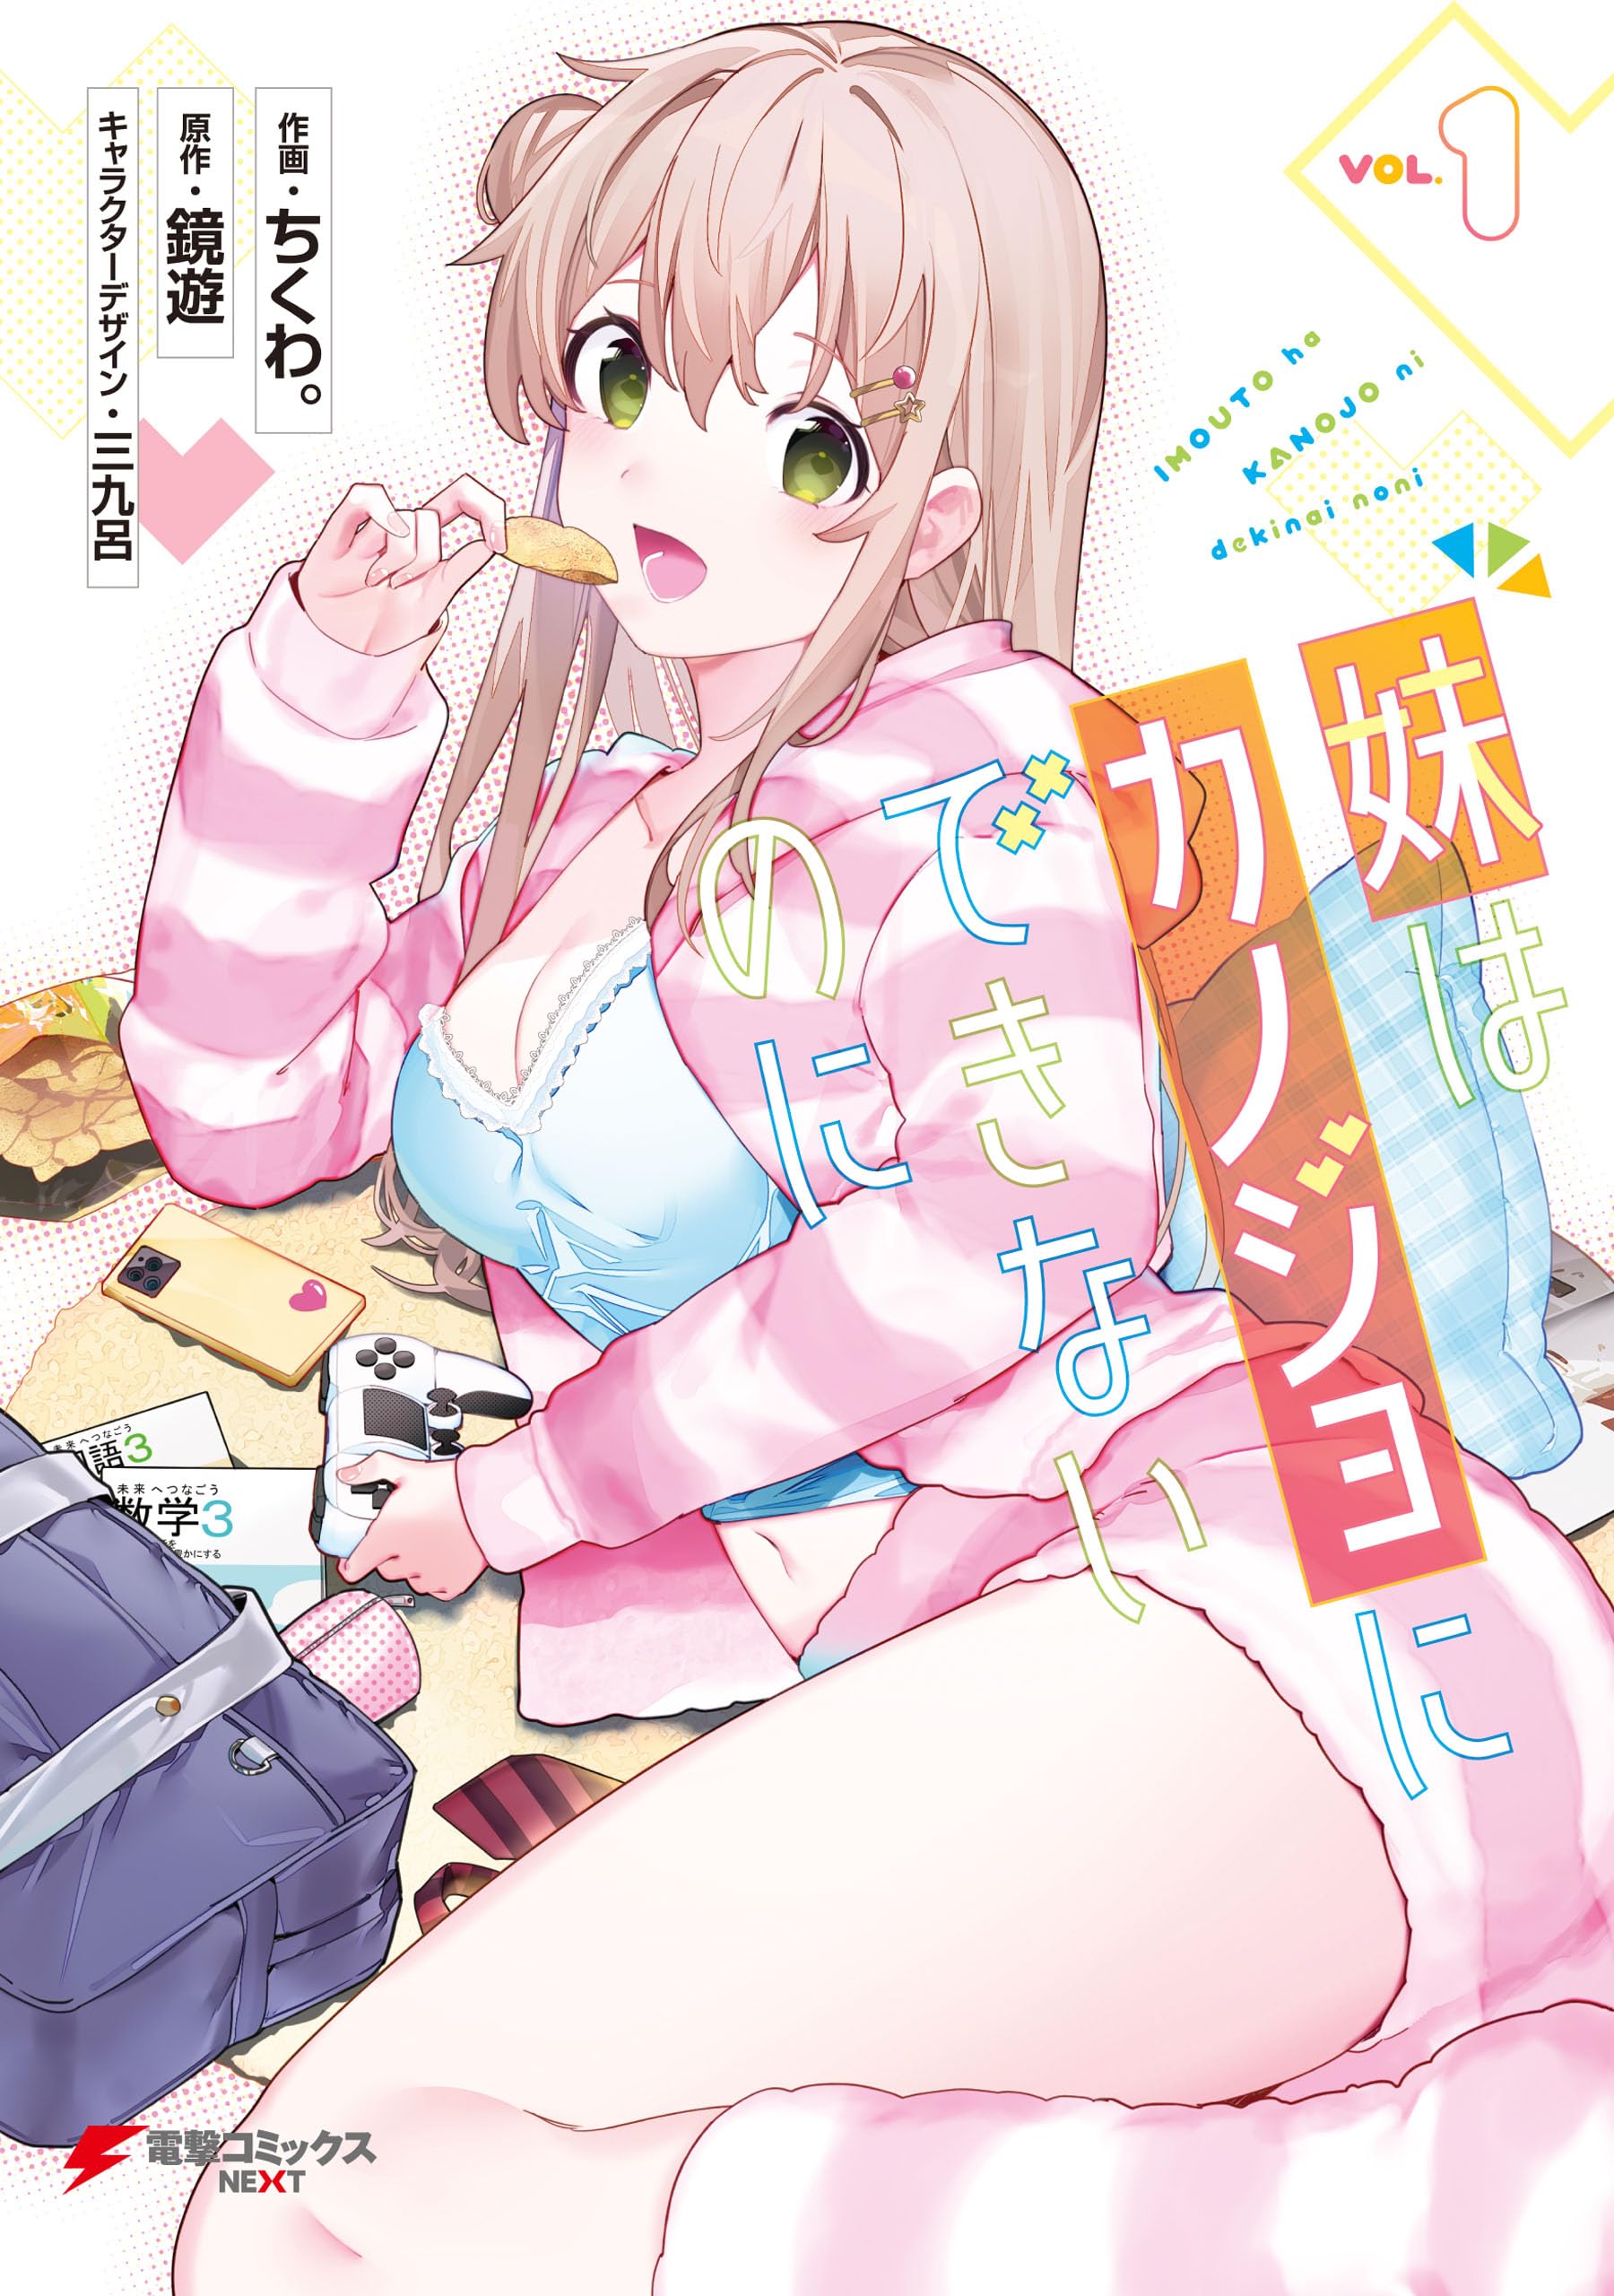 Imouto wa Kanojo ni Dekinai no ni Manga - Read Manga Online Free